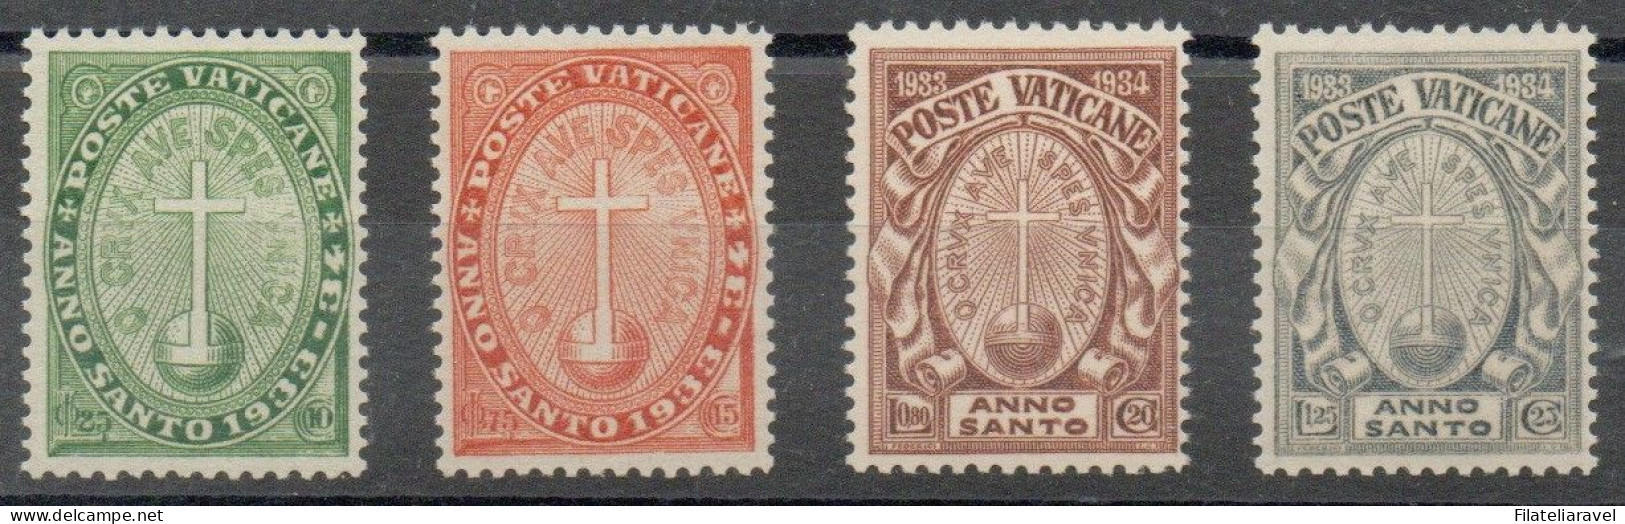 Vaticano - 1933 - "Anno Santo Straordinario", Serie Completa, 4 Valori, Gomma Integra, Catalogo 15/18 - Ungebraucht